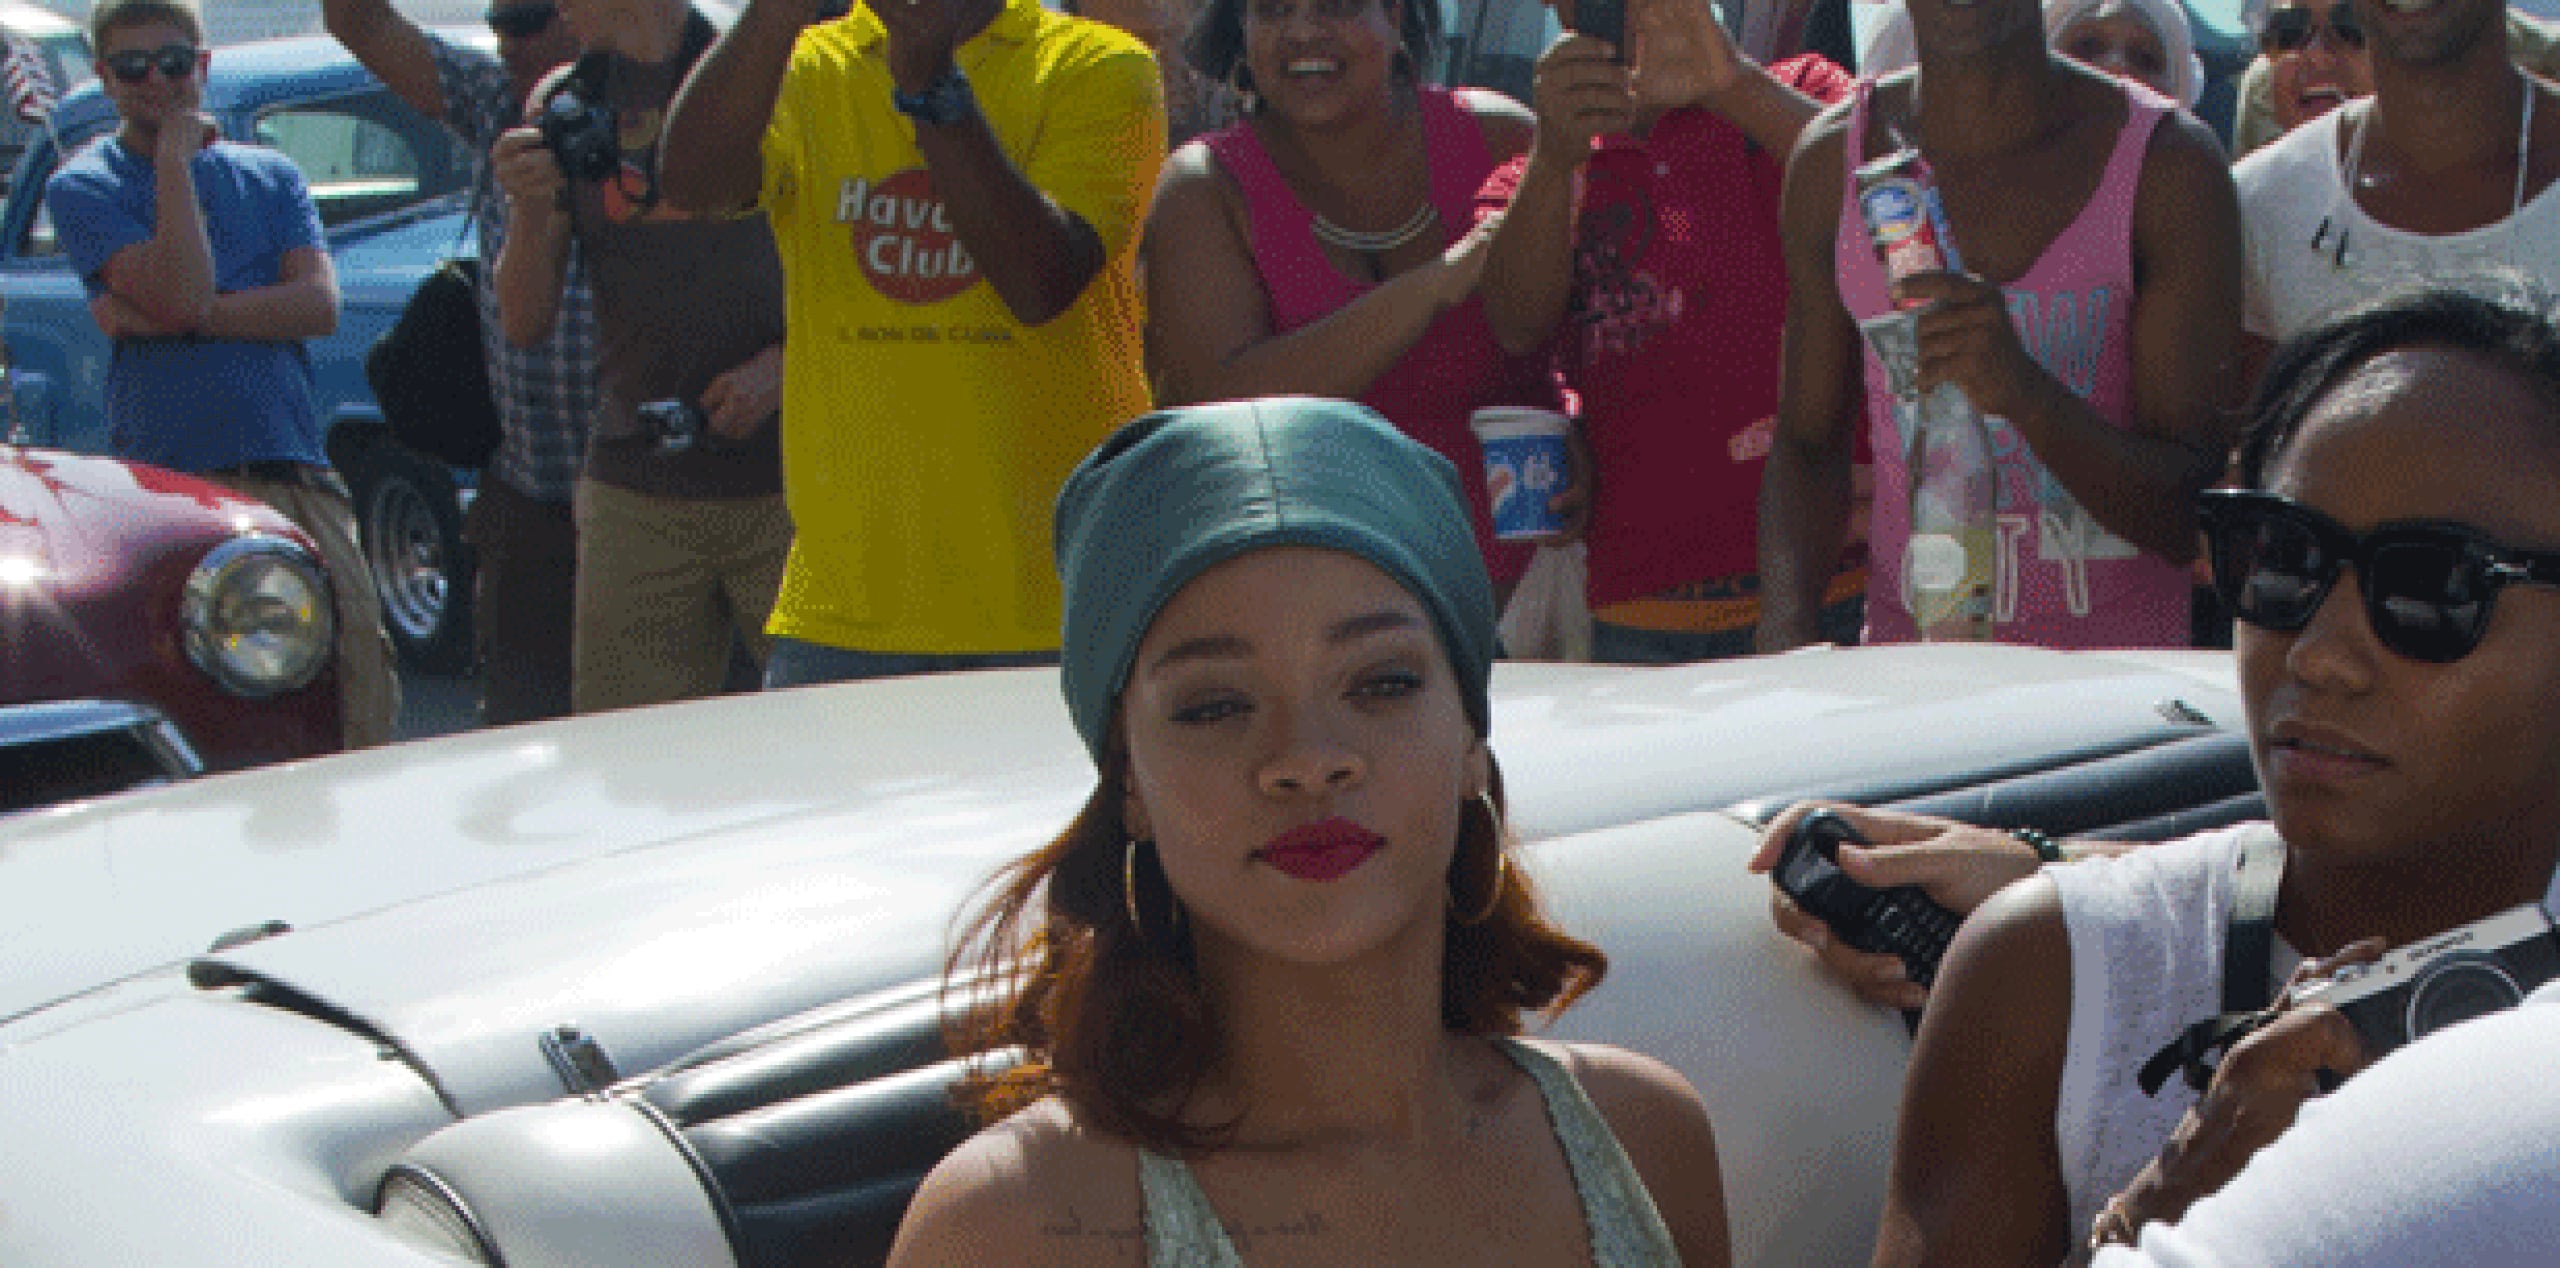 Niños y jóvenes se aglomeraron para tratar de ver a Rihanna y tomarle fotos con sus celulares mientras un fuerte servicio de seguridad no les permitía acercarse. (AP)